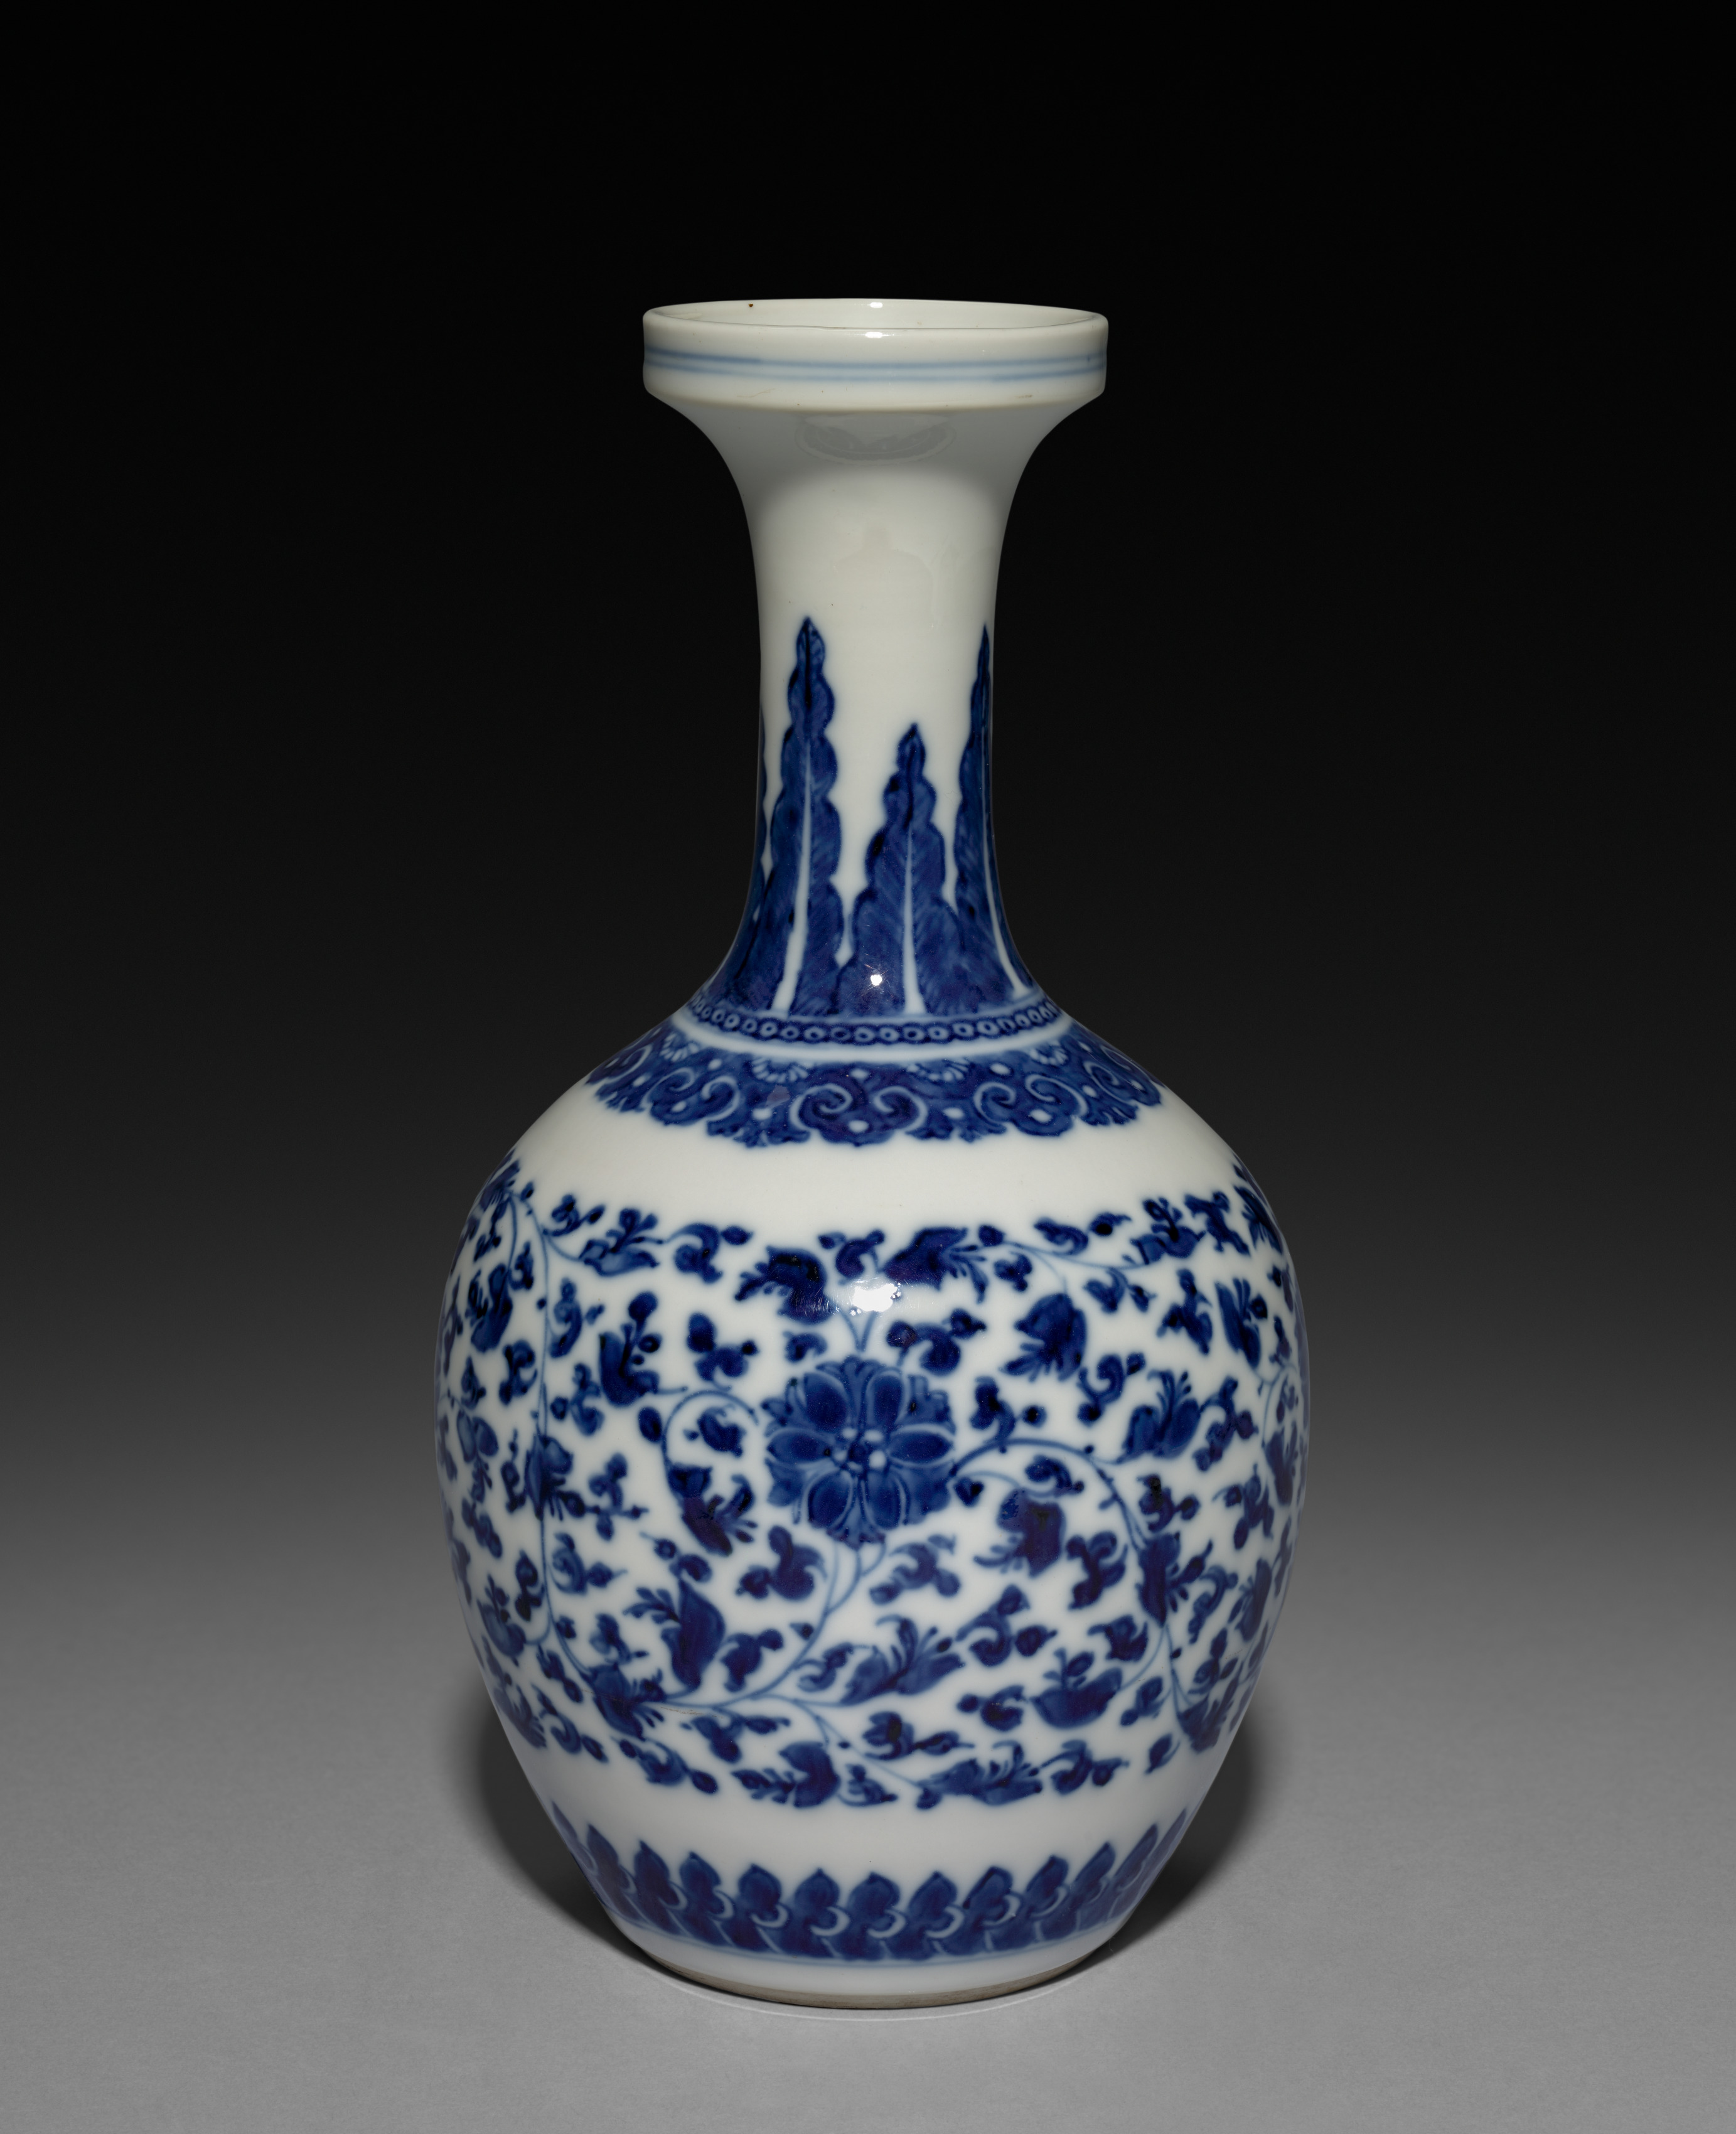 Globular Vase with Long Neck